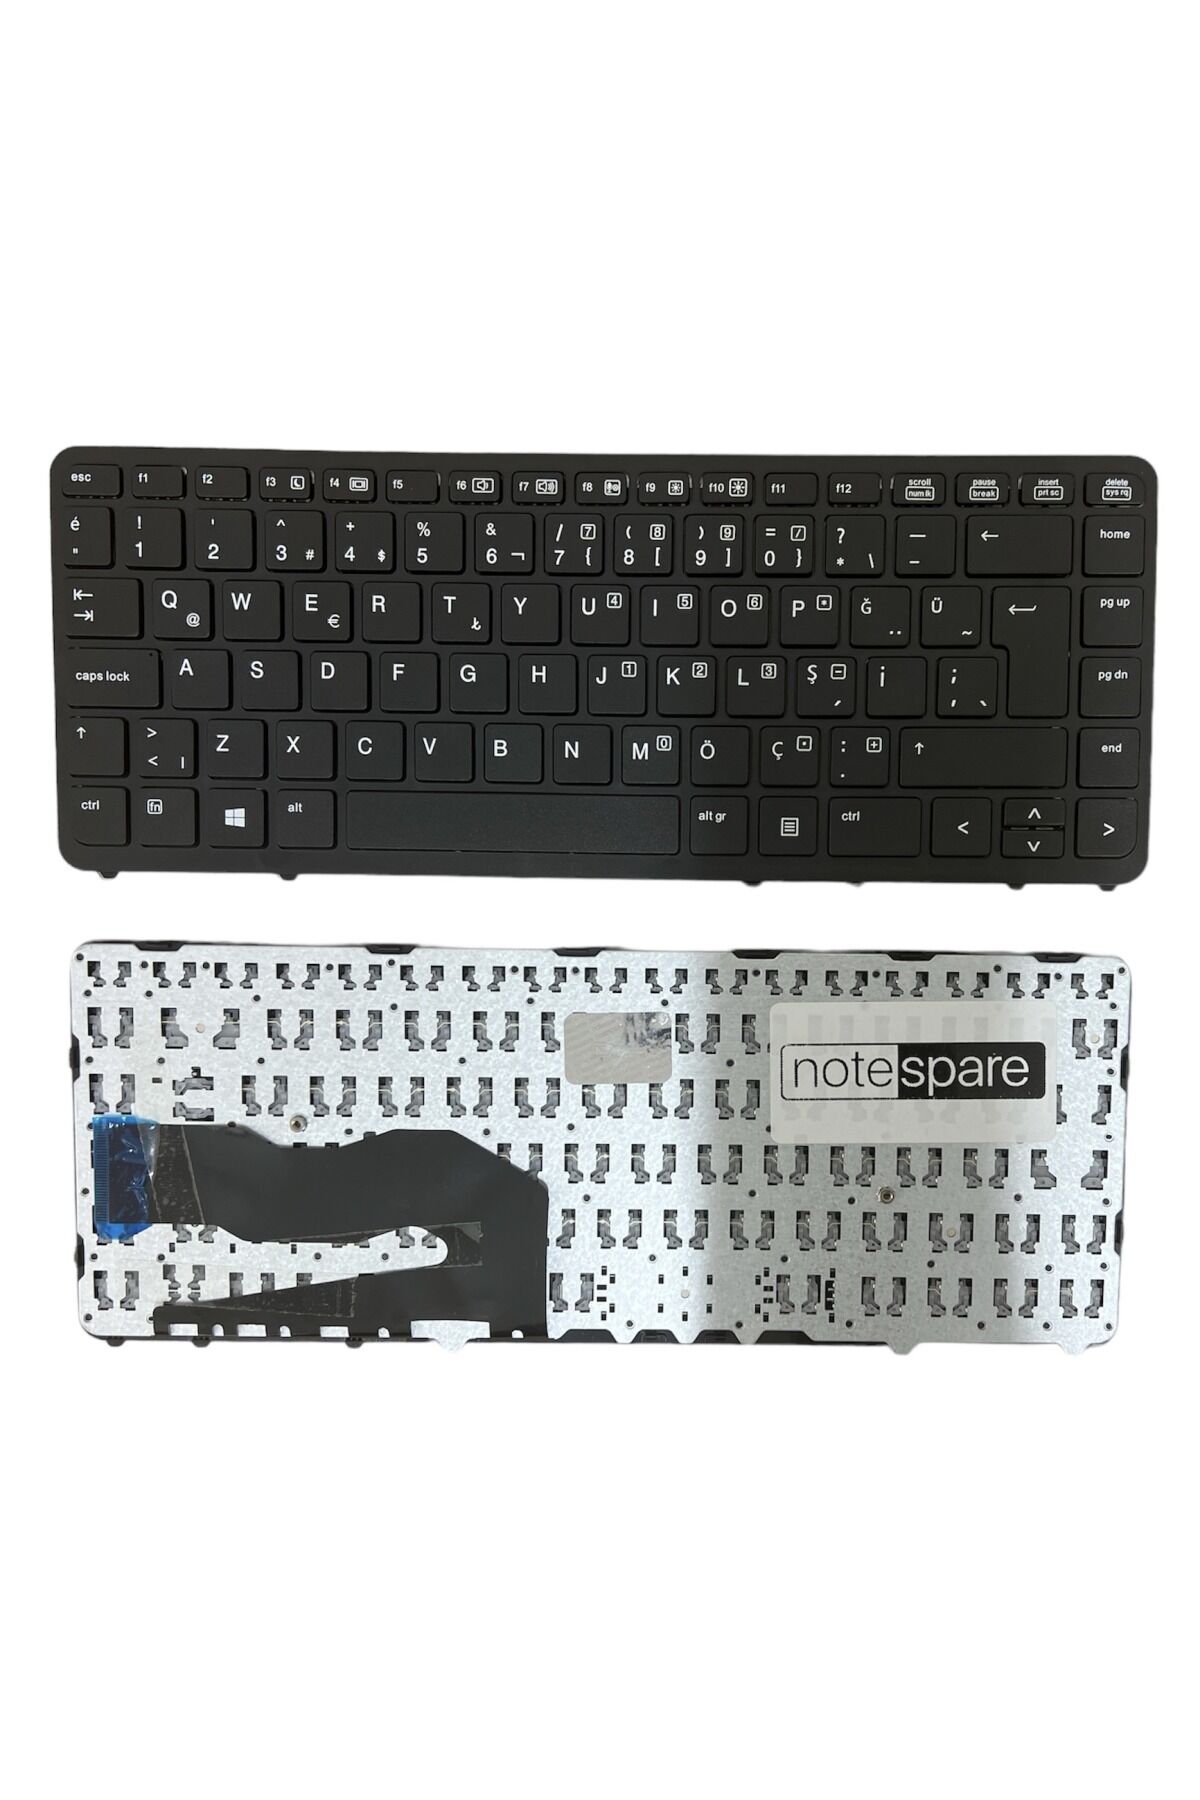 Hp ile Uyumlu EliteBook 840 G2 J8R51EA, 840 G2 L2W81AW Notebook Klavye Siyah TR Çerçeveli